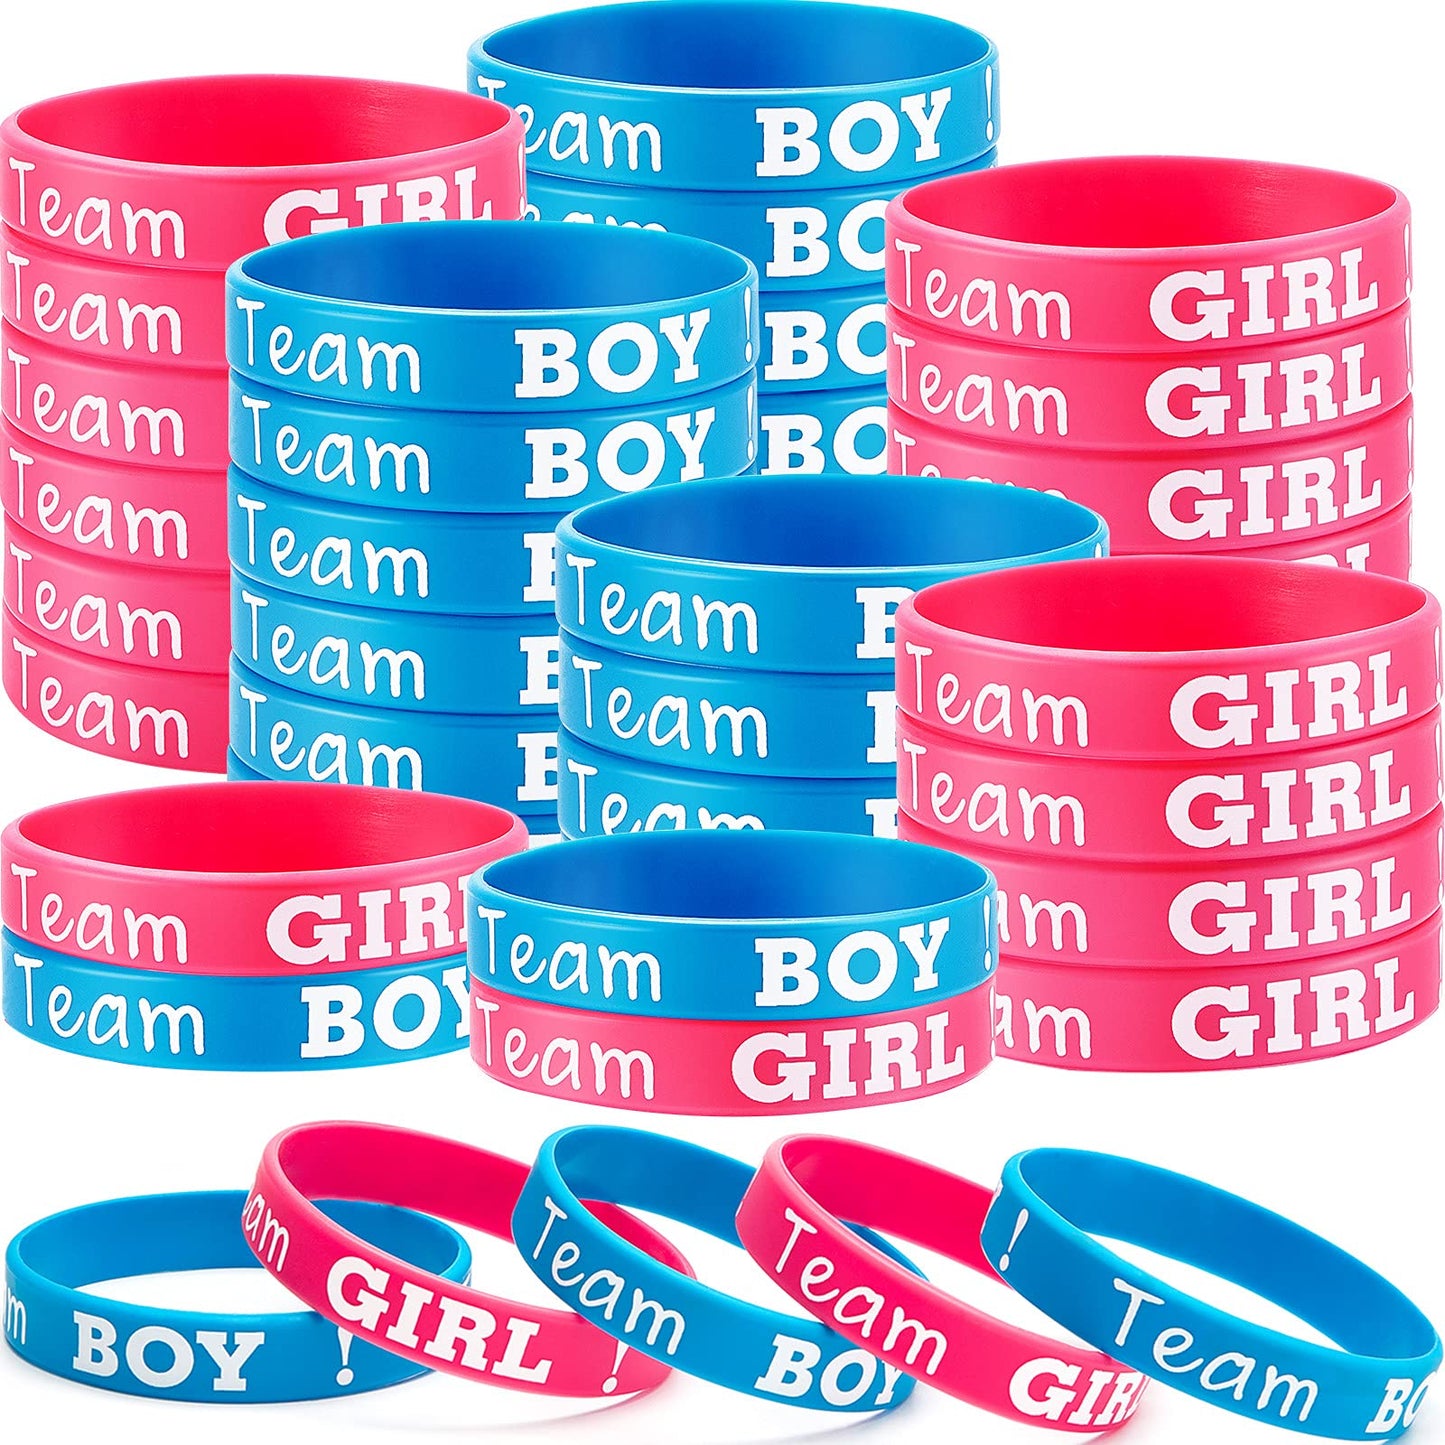 Boy Girl Bracelets for gender reveal games